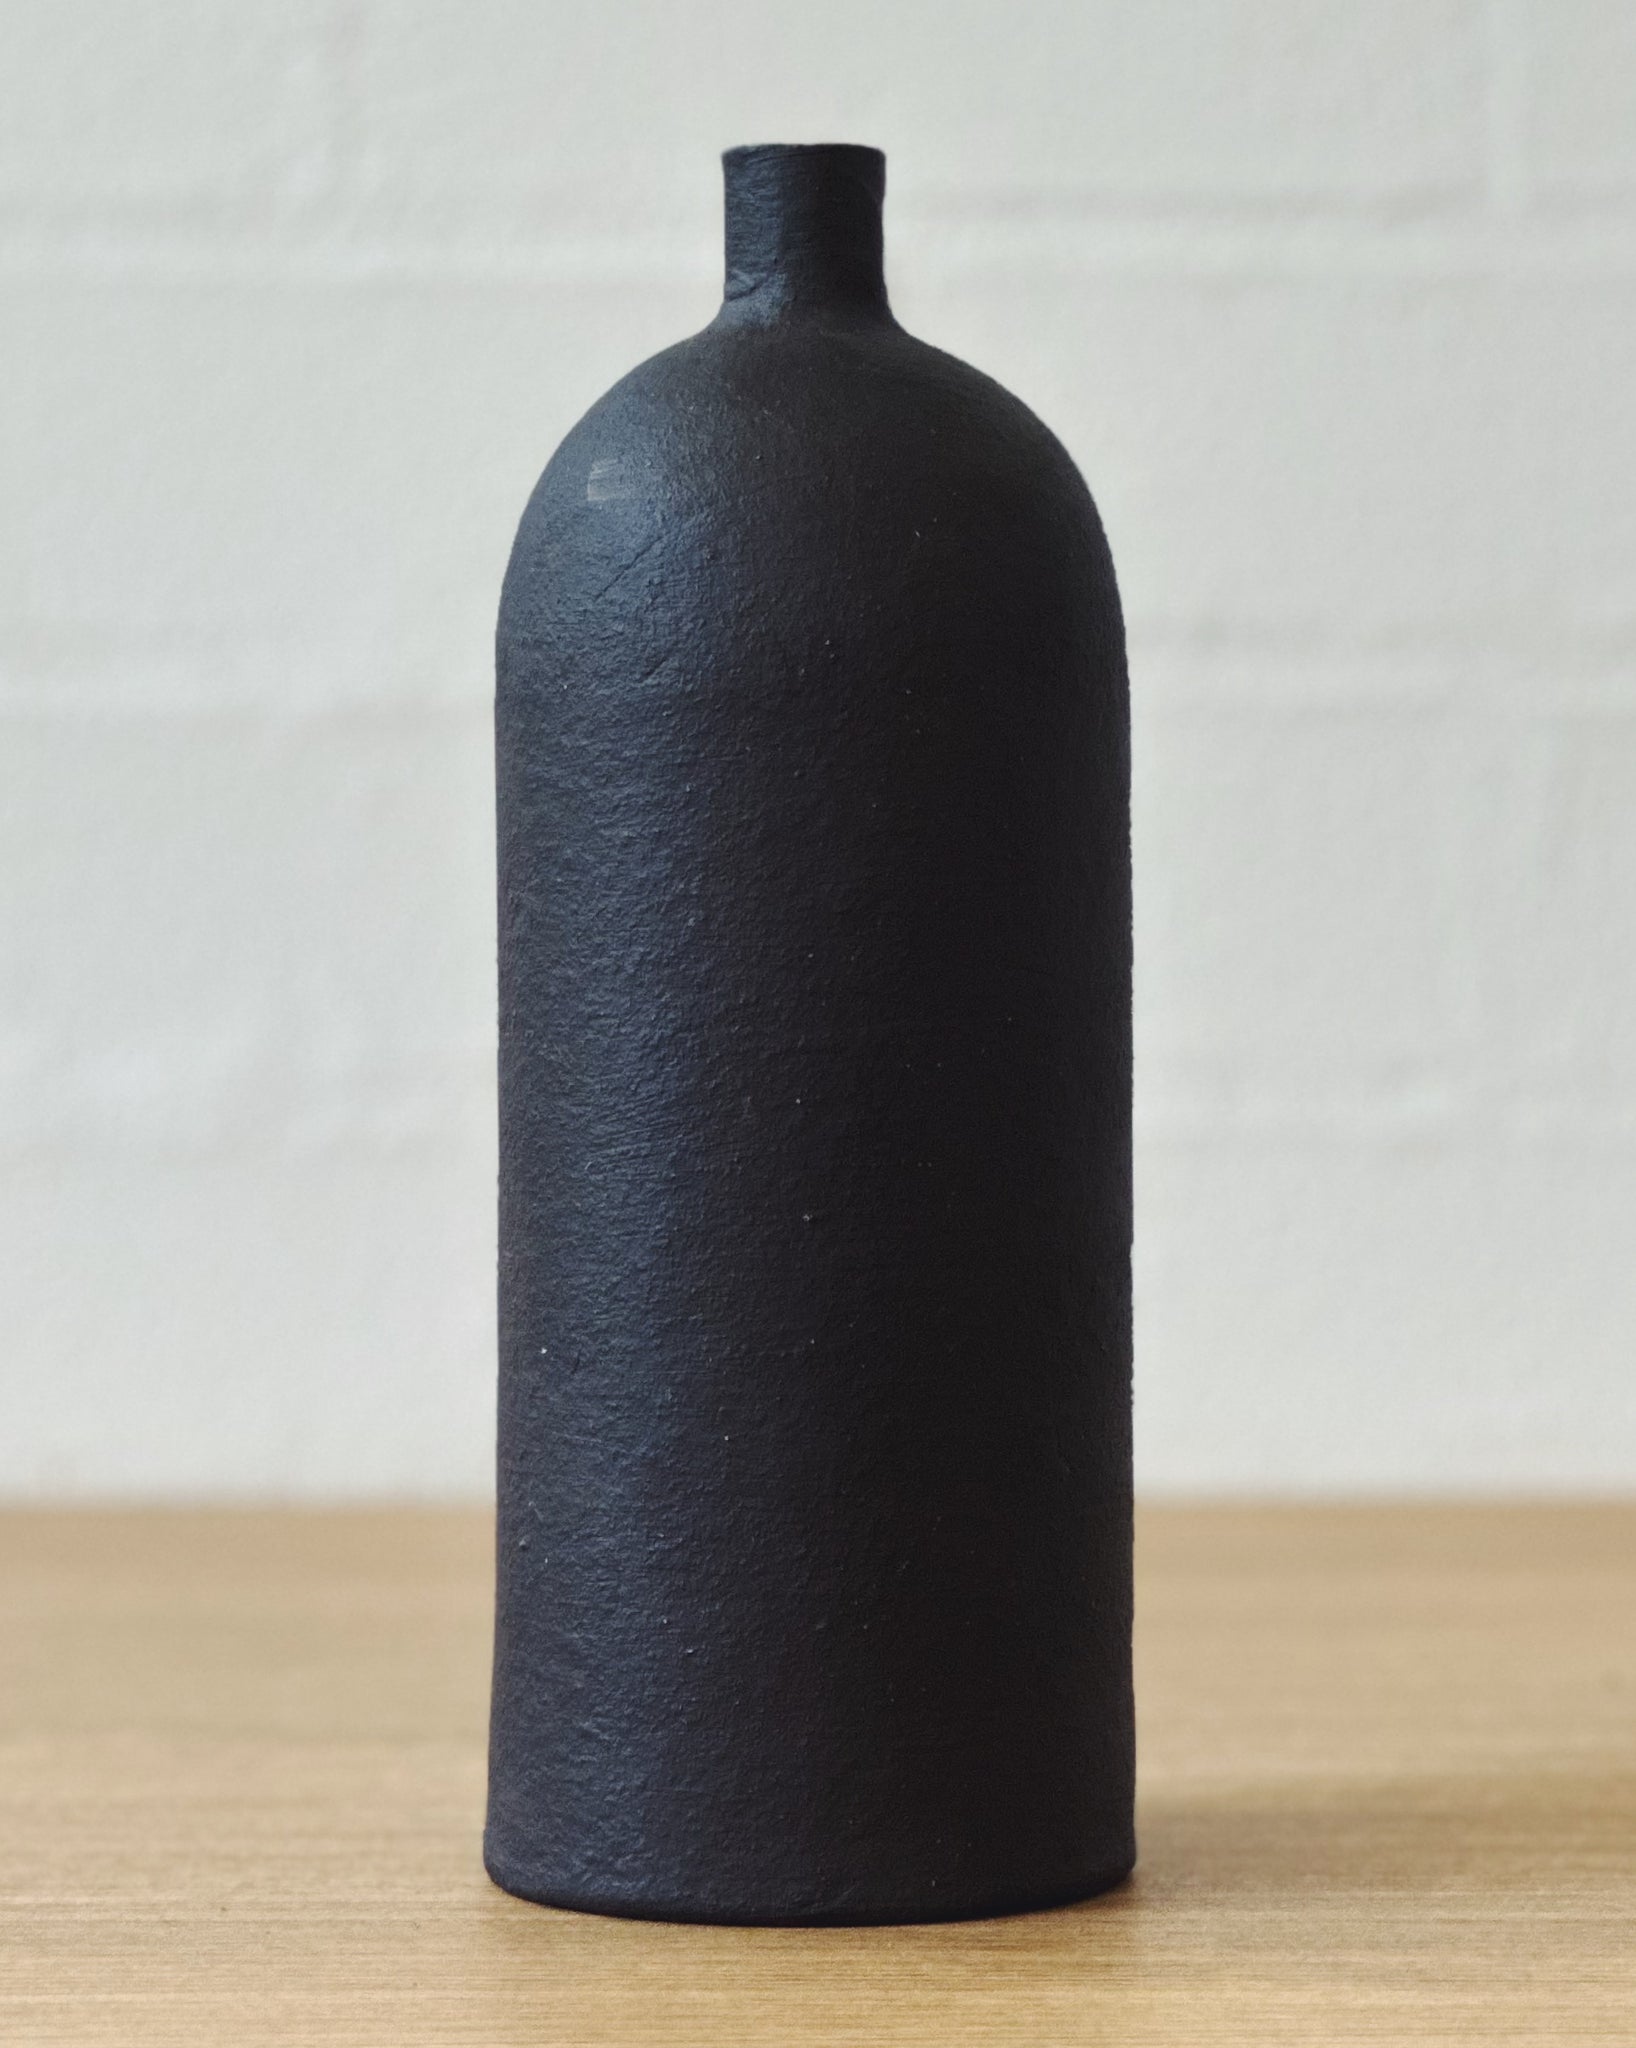 black vaseUP bottle